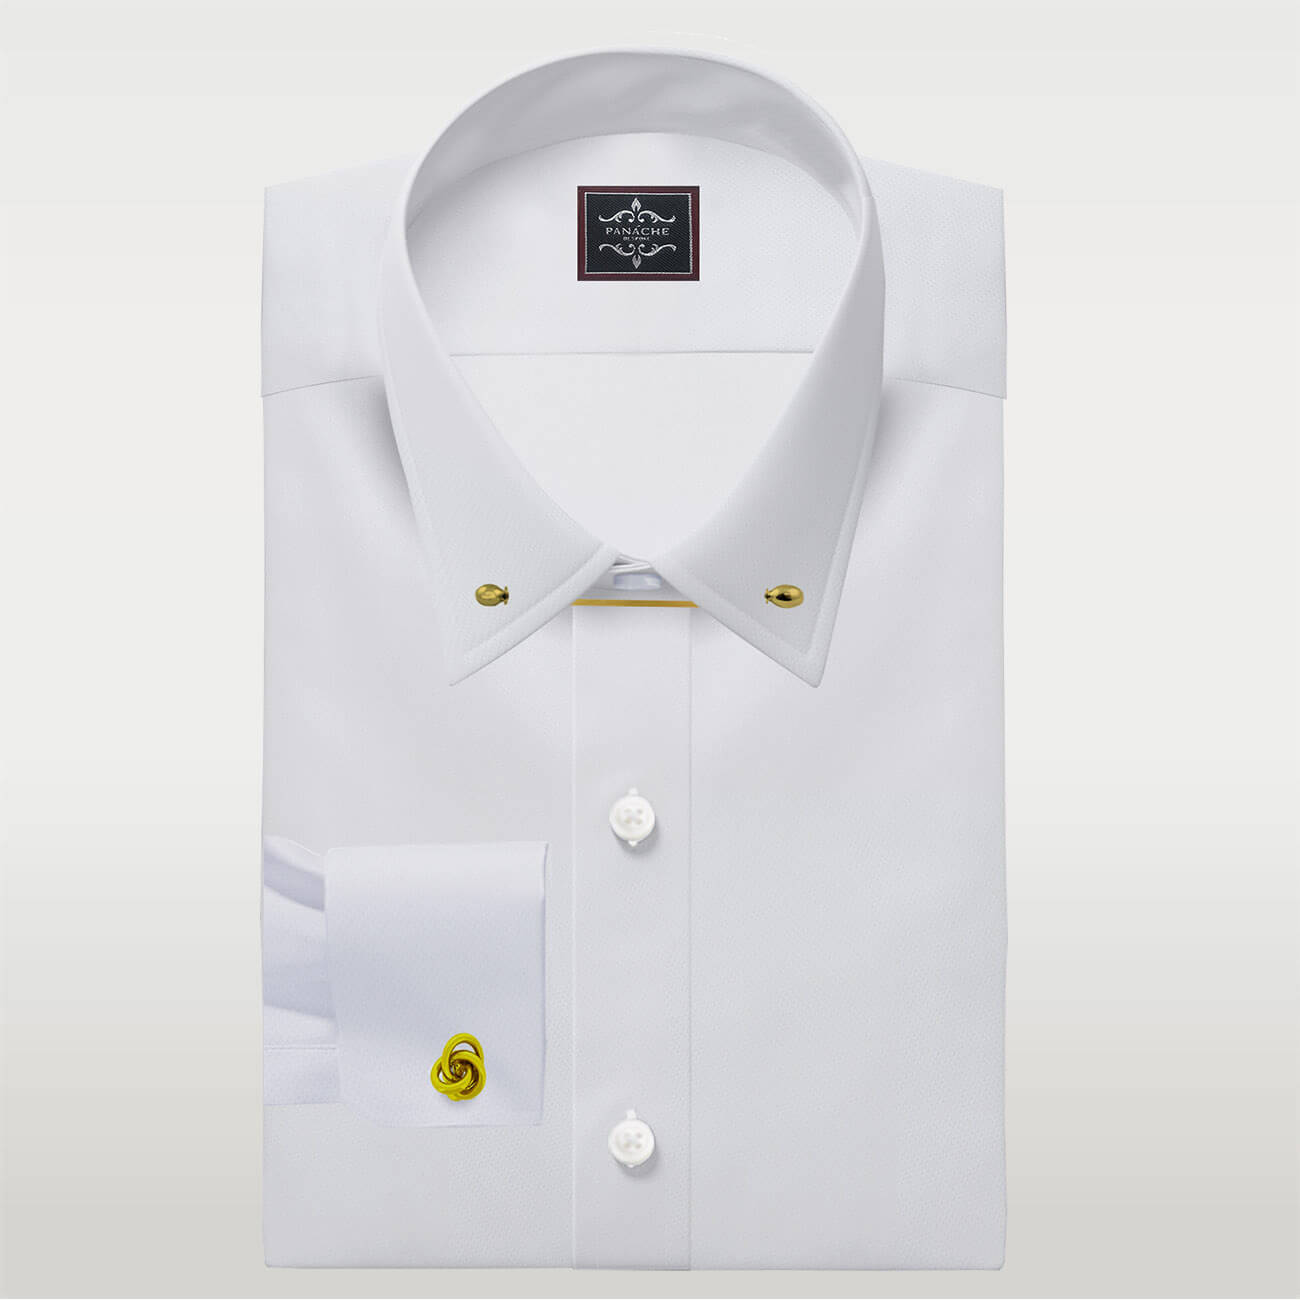 Pin Collar Dress Shirt, Men's Dress Shirts